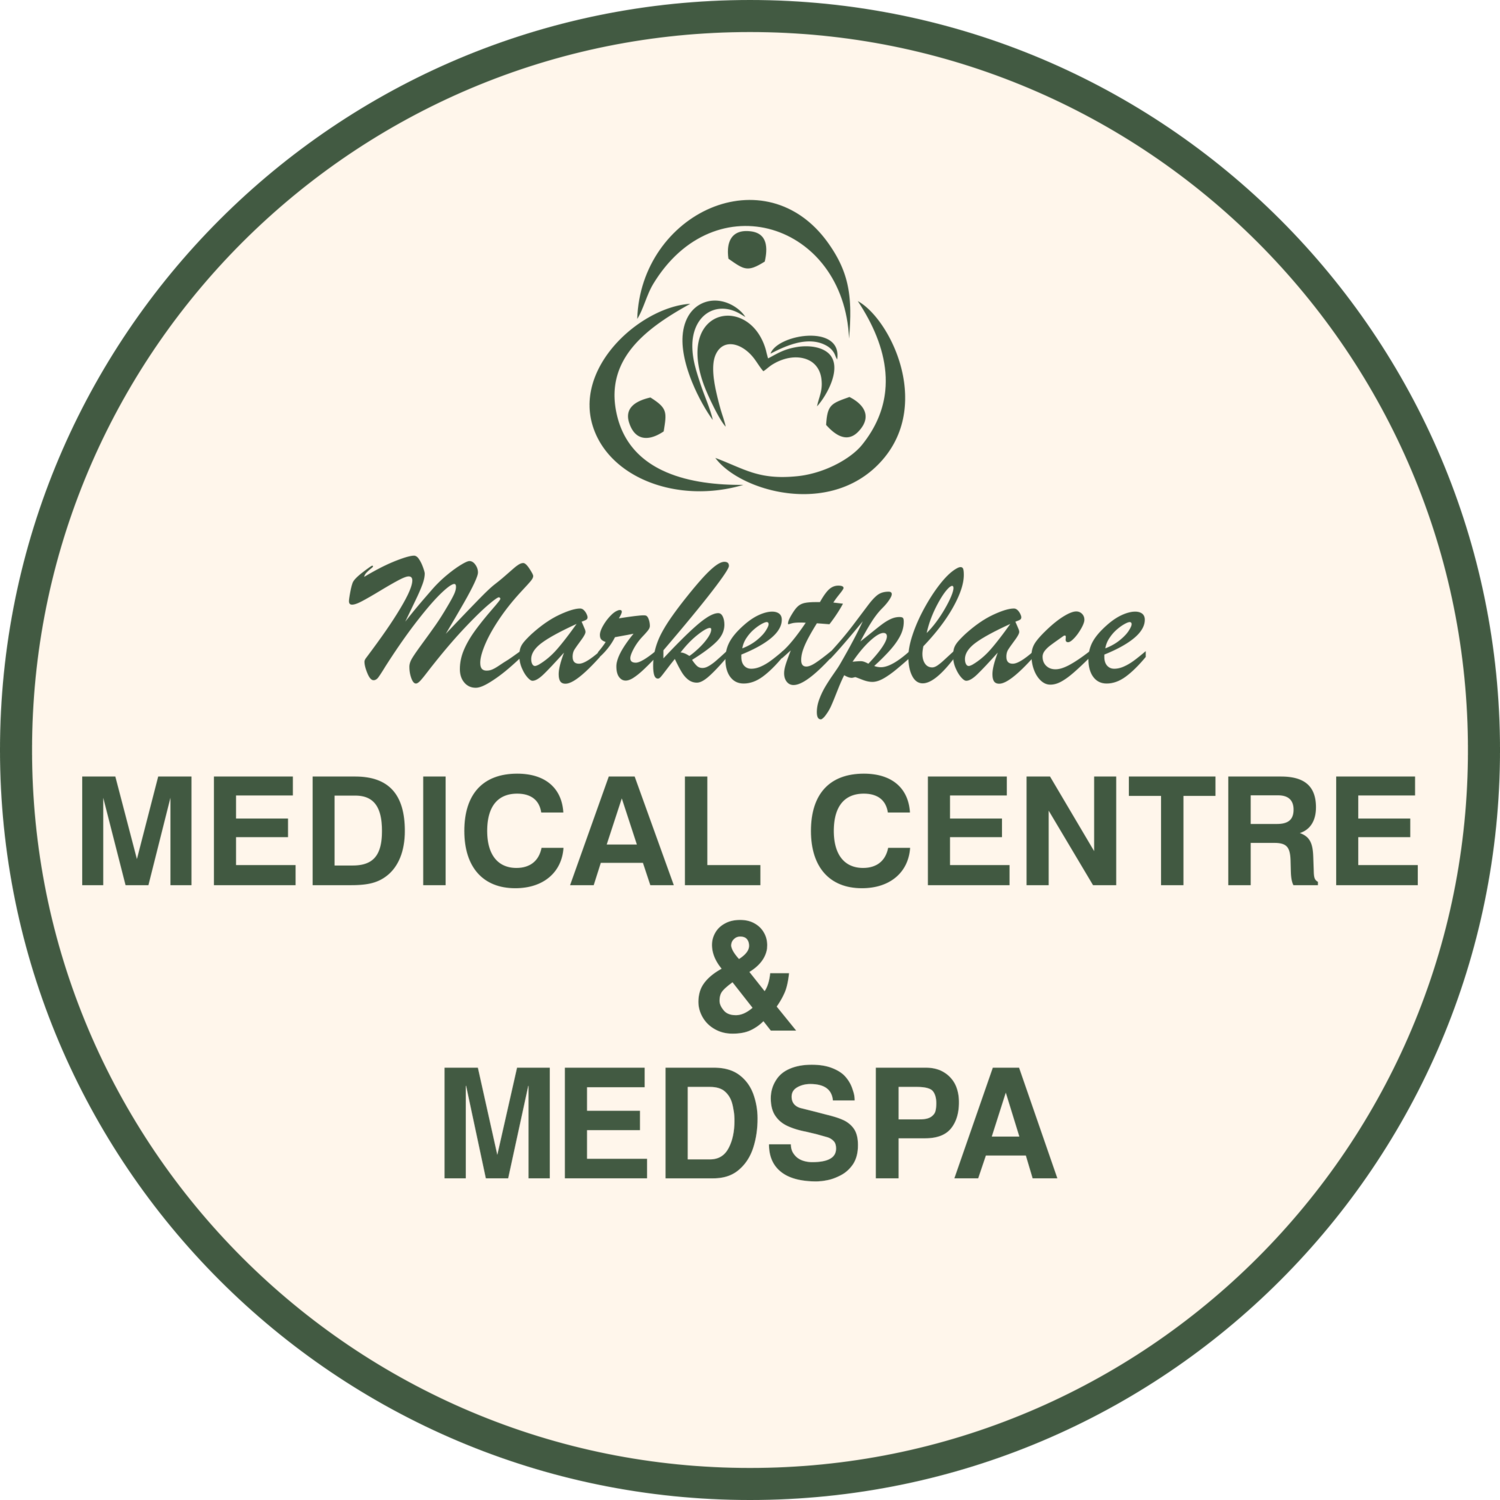 Marketplace Medical Centre and MedSpa